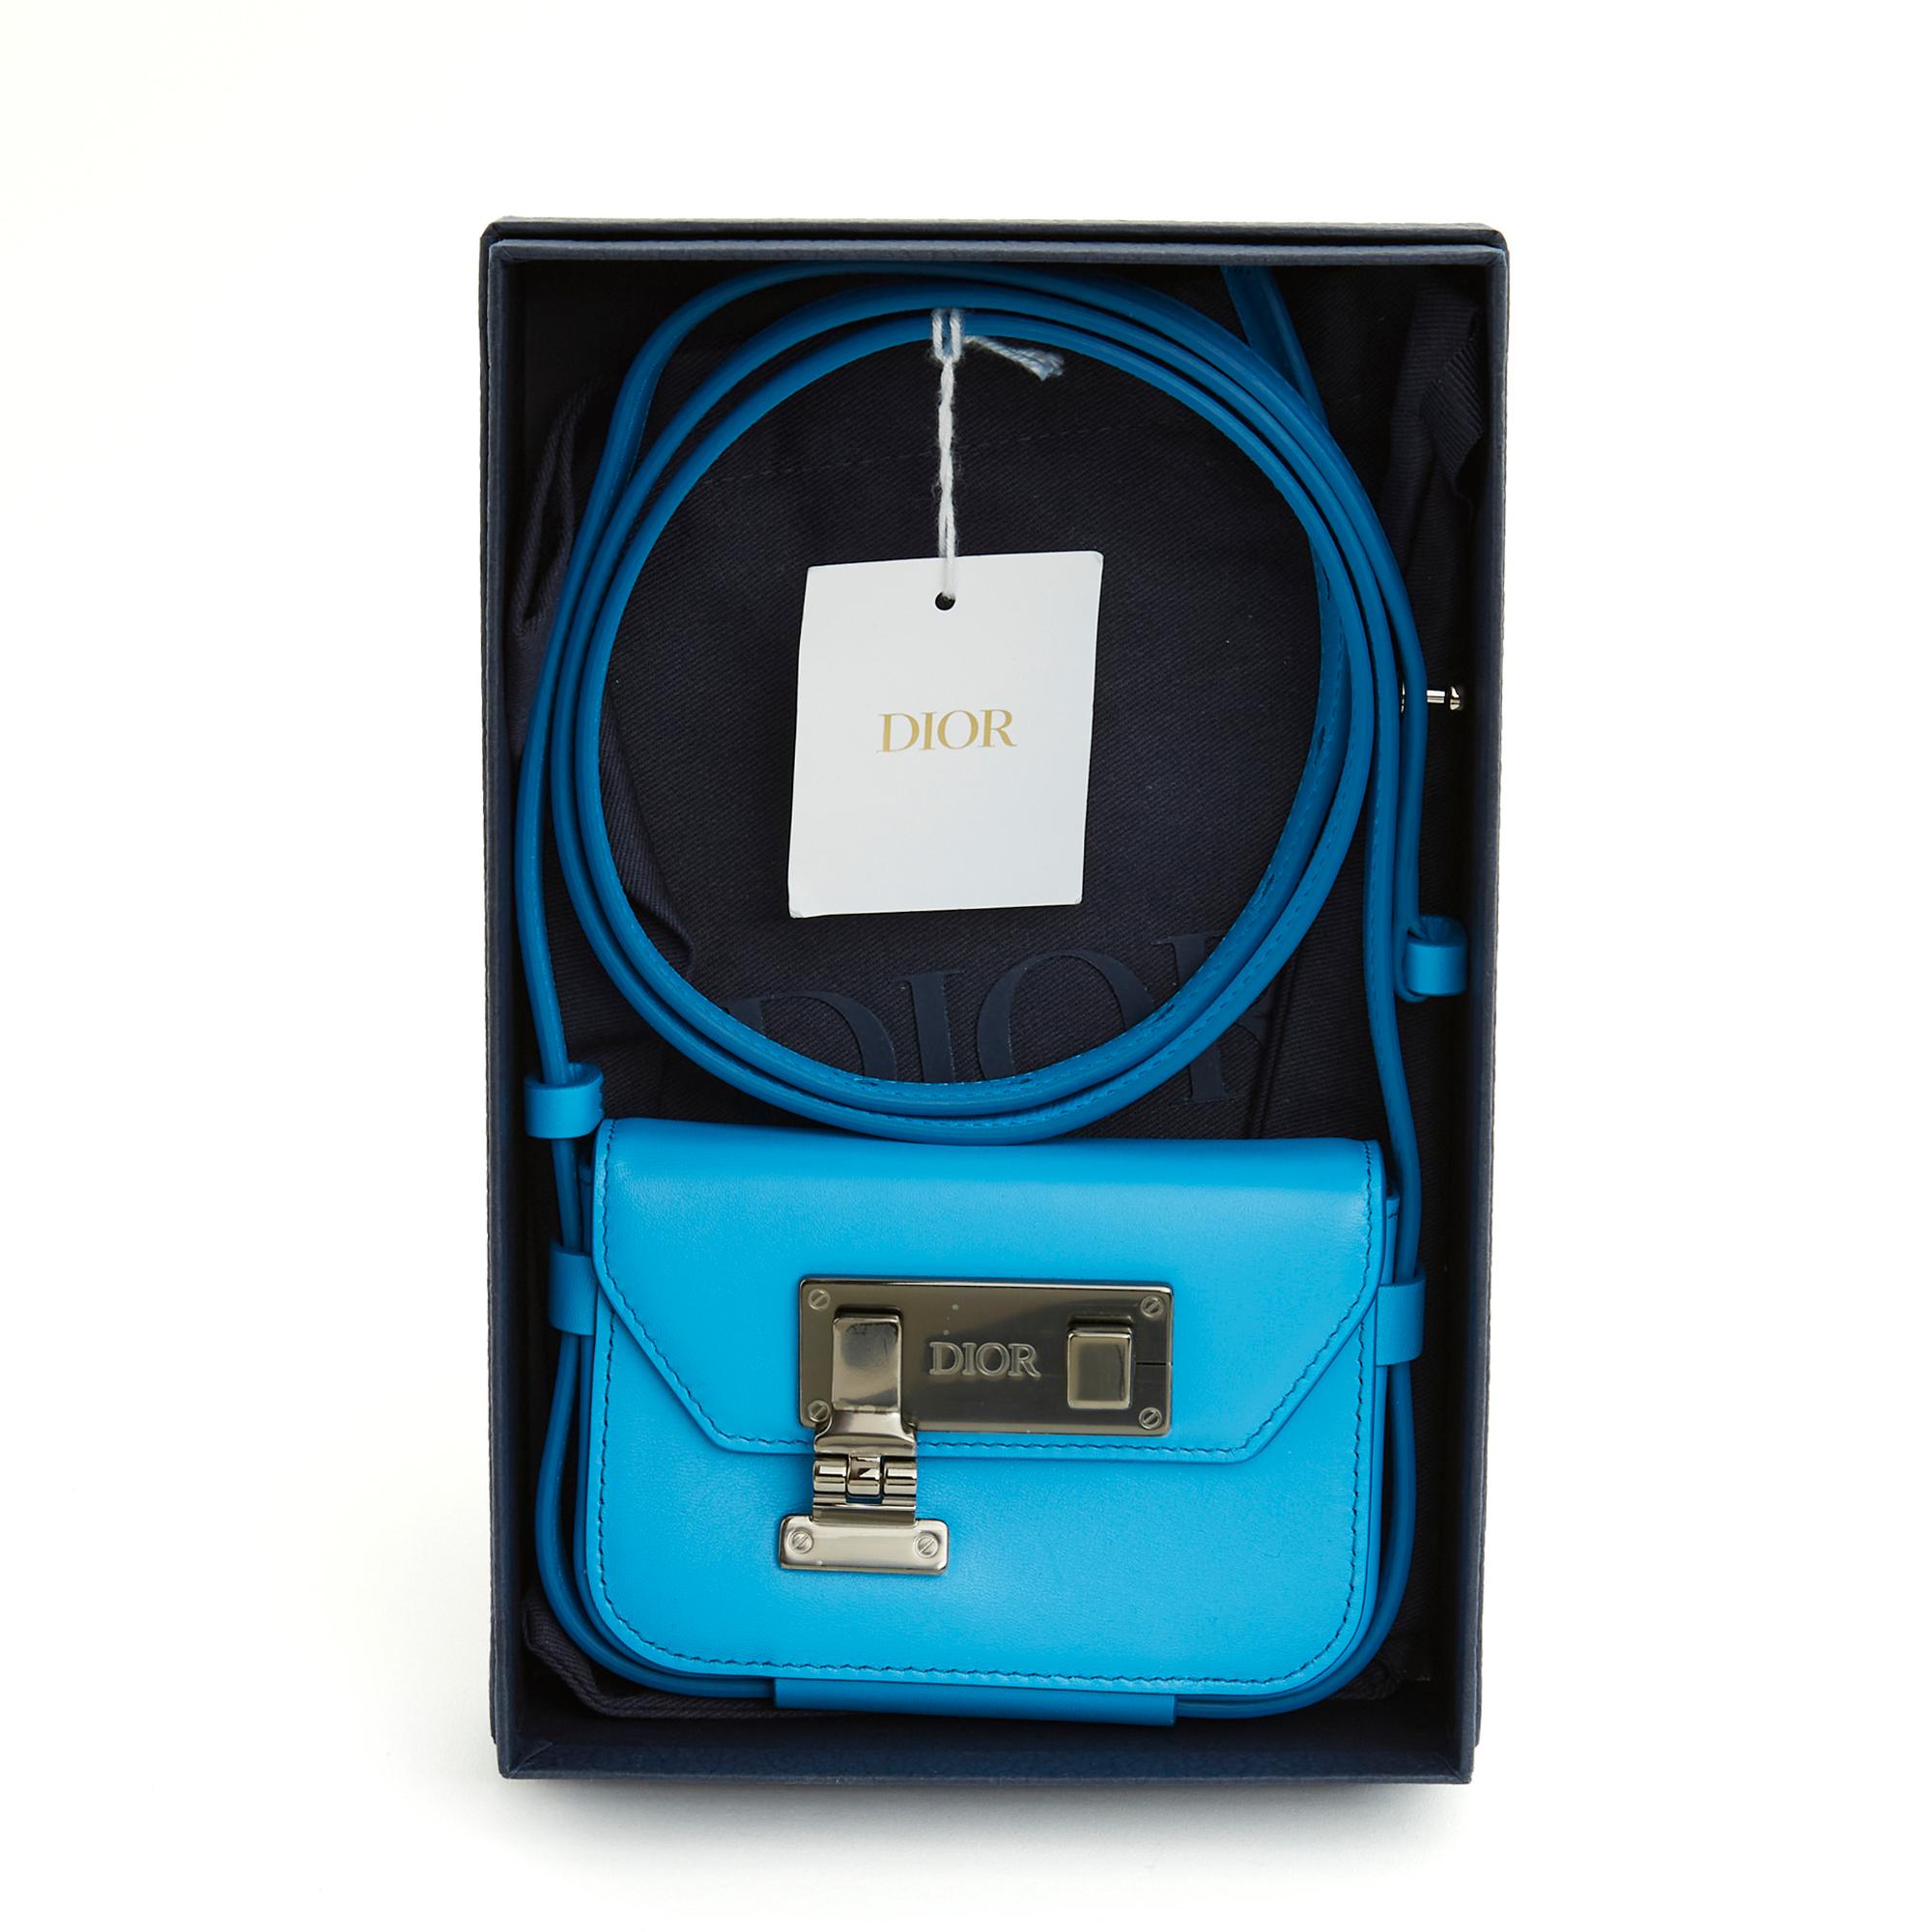 Pochette Nano Dior en cuir bleu roi, fermoir en métal argenté légèrement foncé (ruthénium) avec le logo Dior, intérieur en toile noire avec une pochette plaquée pour une carte, longue bandoulière réglable pour un portage croisé. Largeur 11,5 cm x